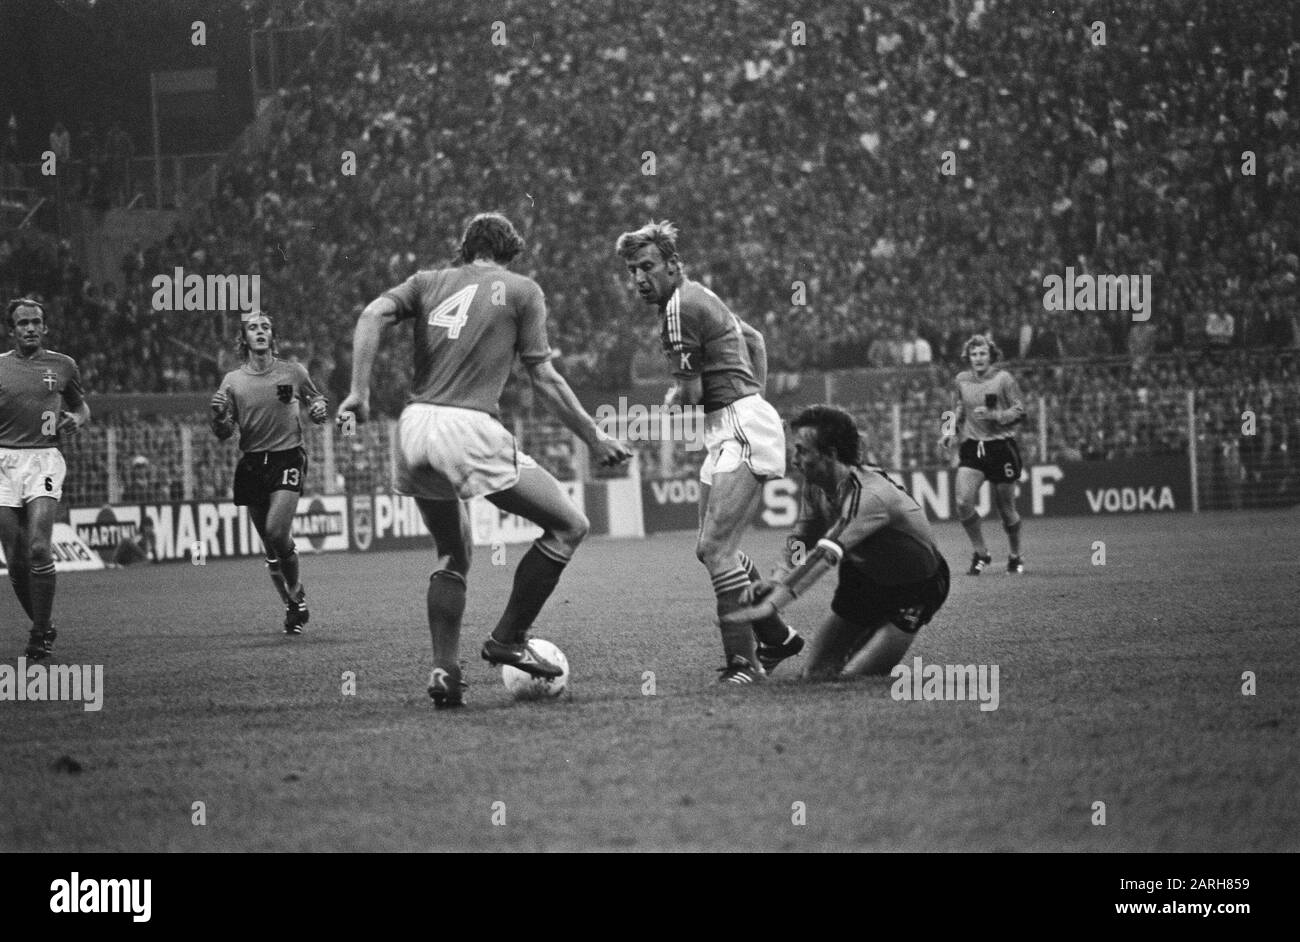 Weltmeisterschaft 74, Niederlande gegen Schweden 0-0, Game Moments Datum: 19. Juni 1974 Schlagwörter: Sport, Fußball, Weltmeisterschaften Stockfoto